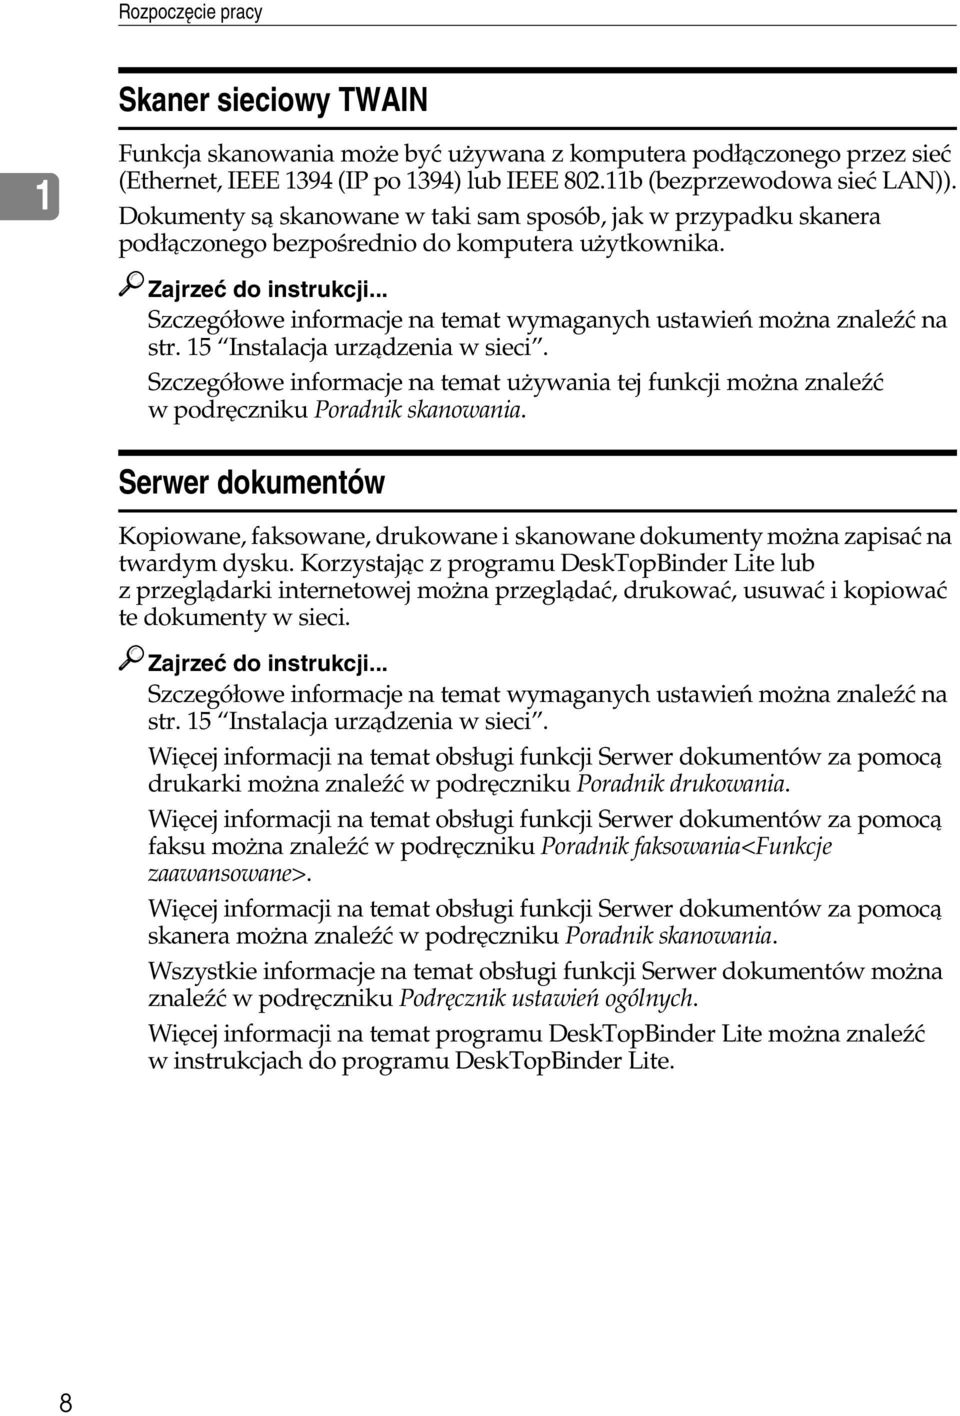 .. Szczegóâowe informacje na temat wymaganych ustawieñ moåna znaleäæ na str. 15 Instalacja urzàdzenia w sieci.